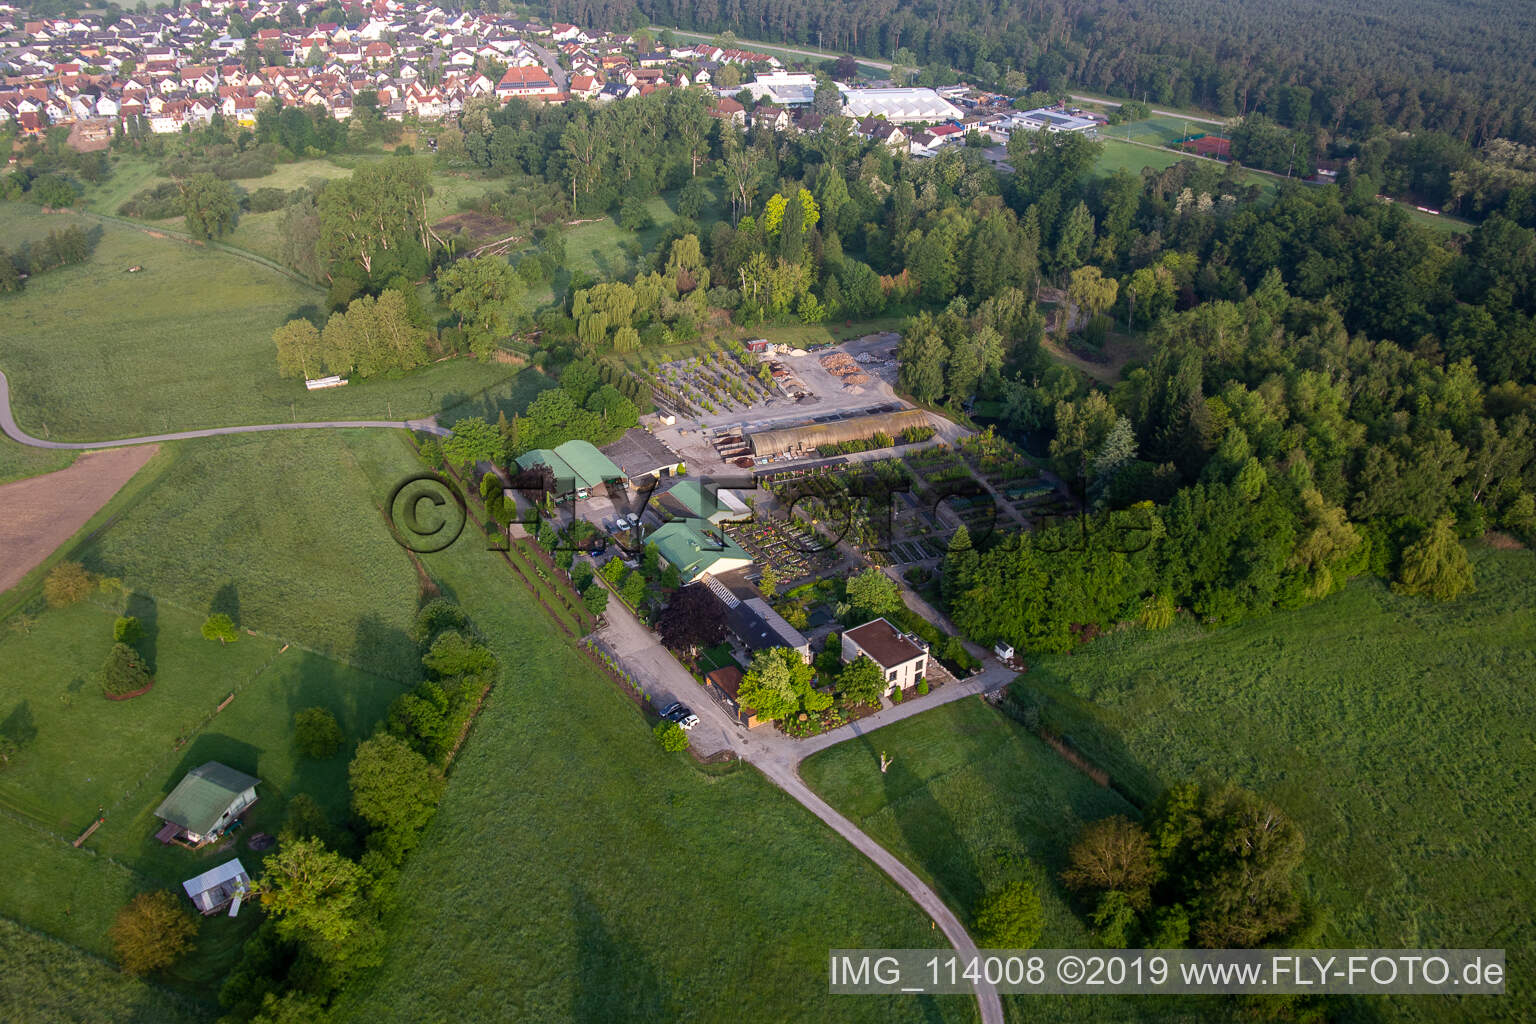 Bienwald Baumschule / Greentec in Berg im Bundesland Rheinland-Pfalz, Deutschland aus der Luft